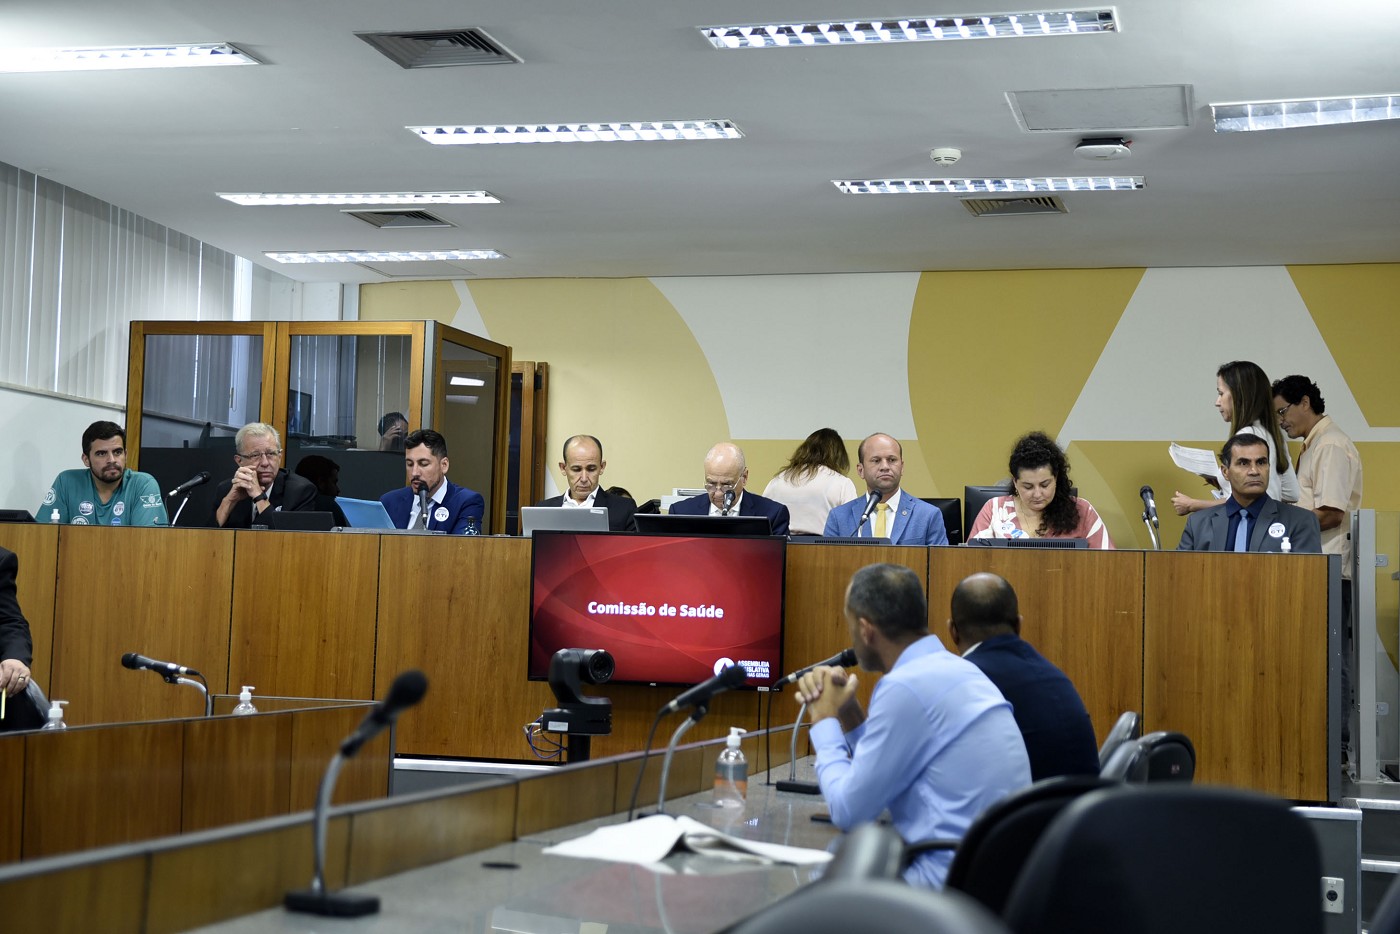 Comissão de Saúde - debate sobre os leitos de UTI em Barbacena